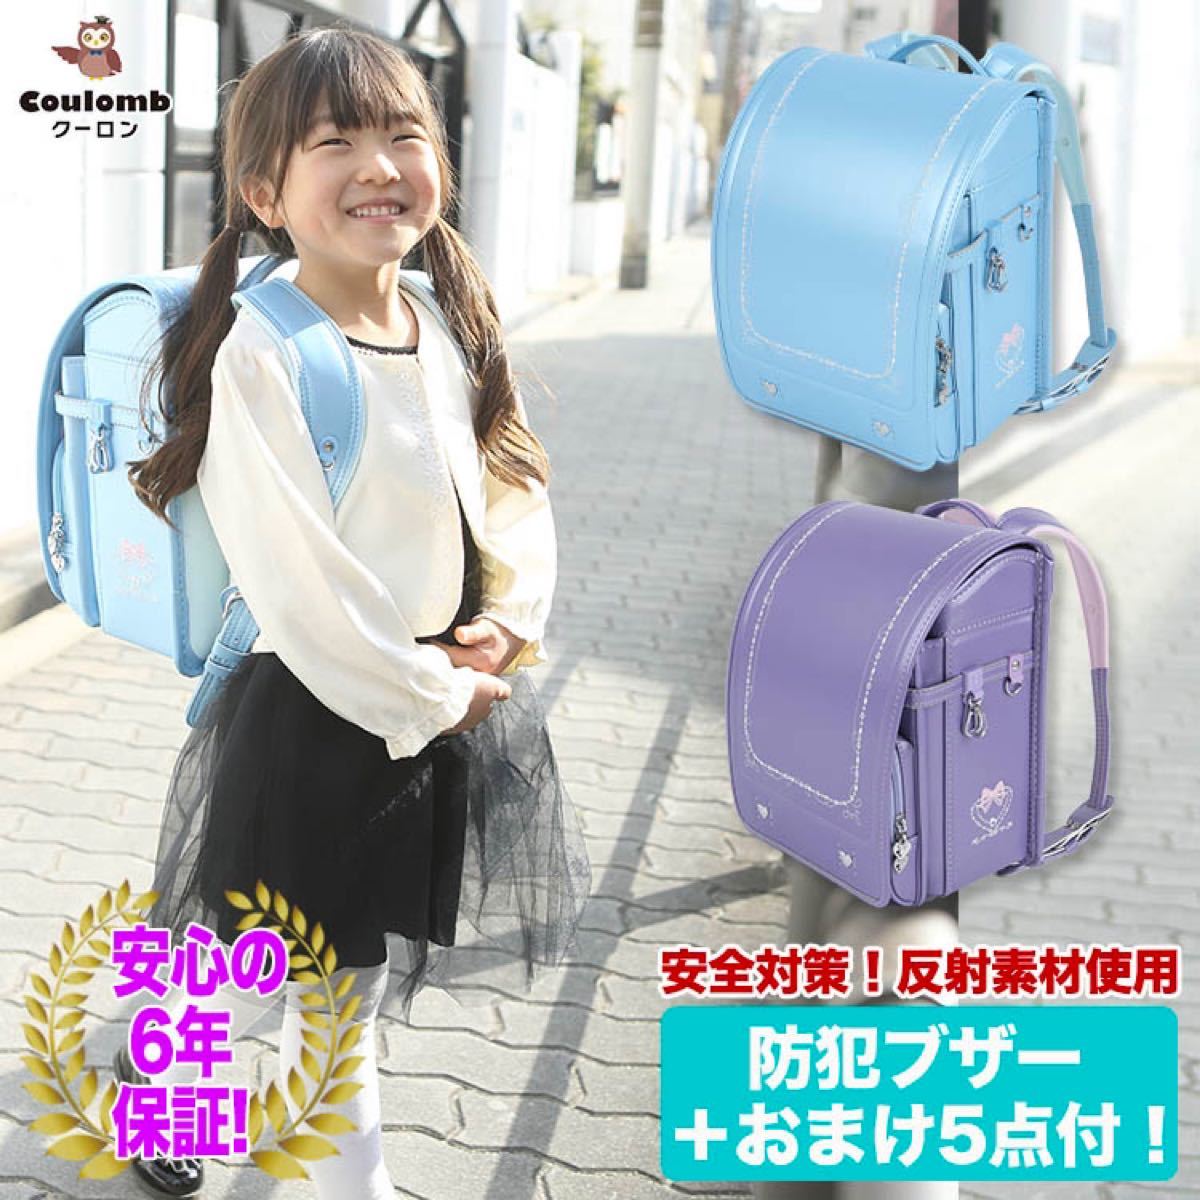 ランドセル 新品 女の子 入学祝い 入園 可愛い ブルー 刺繍 高品質 高級 バッグ アウトレット 激安